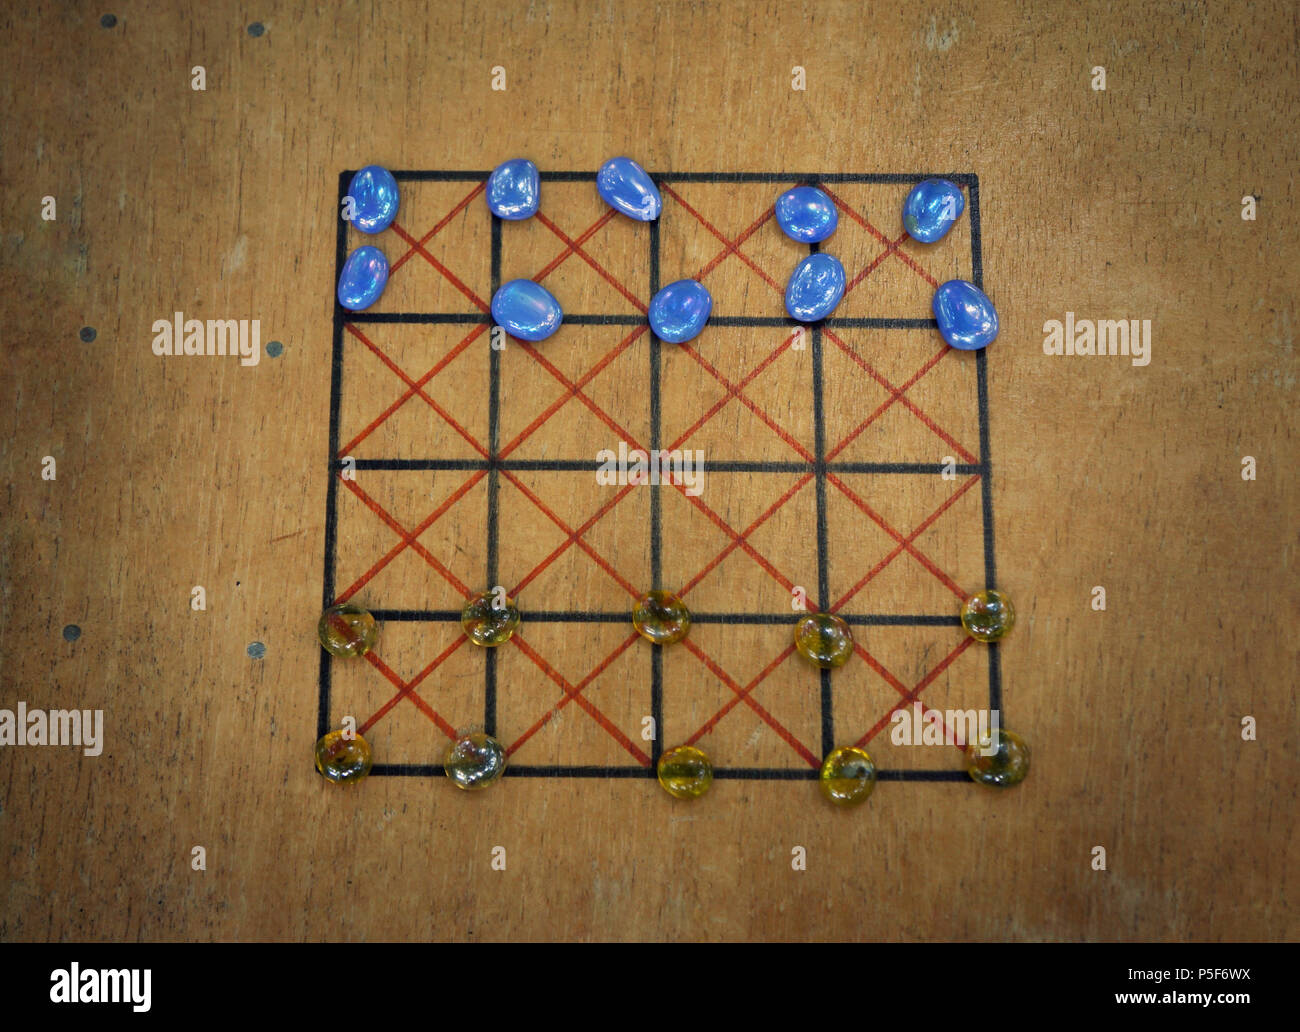 Eine Replik eines römischen Brettspiel mit Glas Figuren Stockfotografie -  Alamy